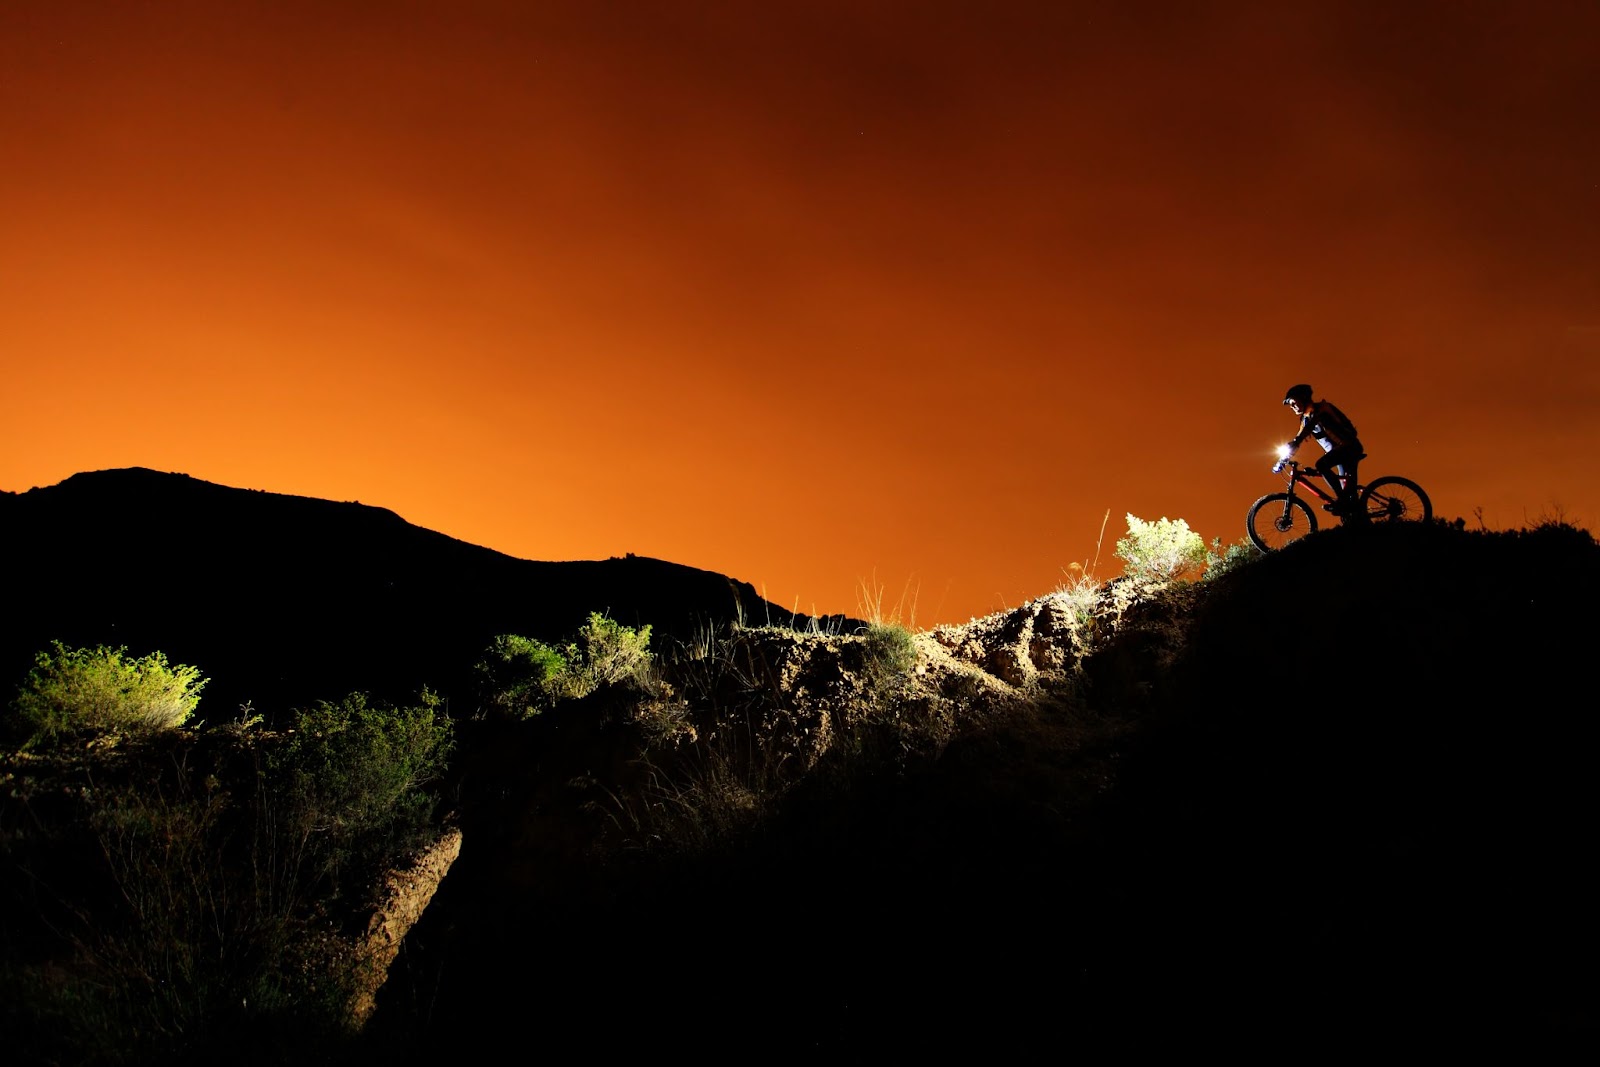 Mountain biking at night